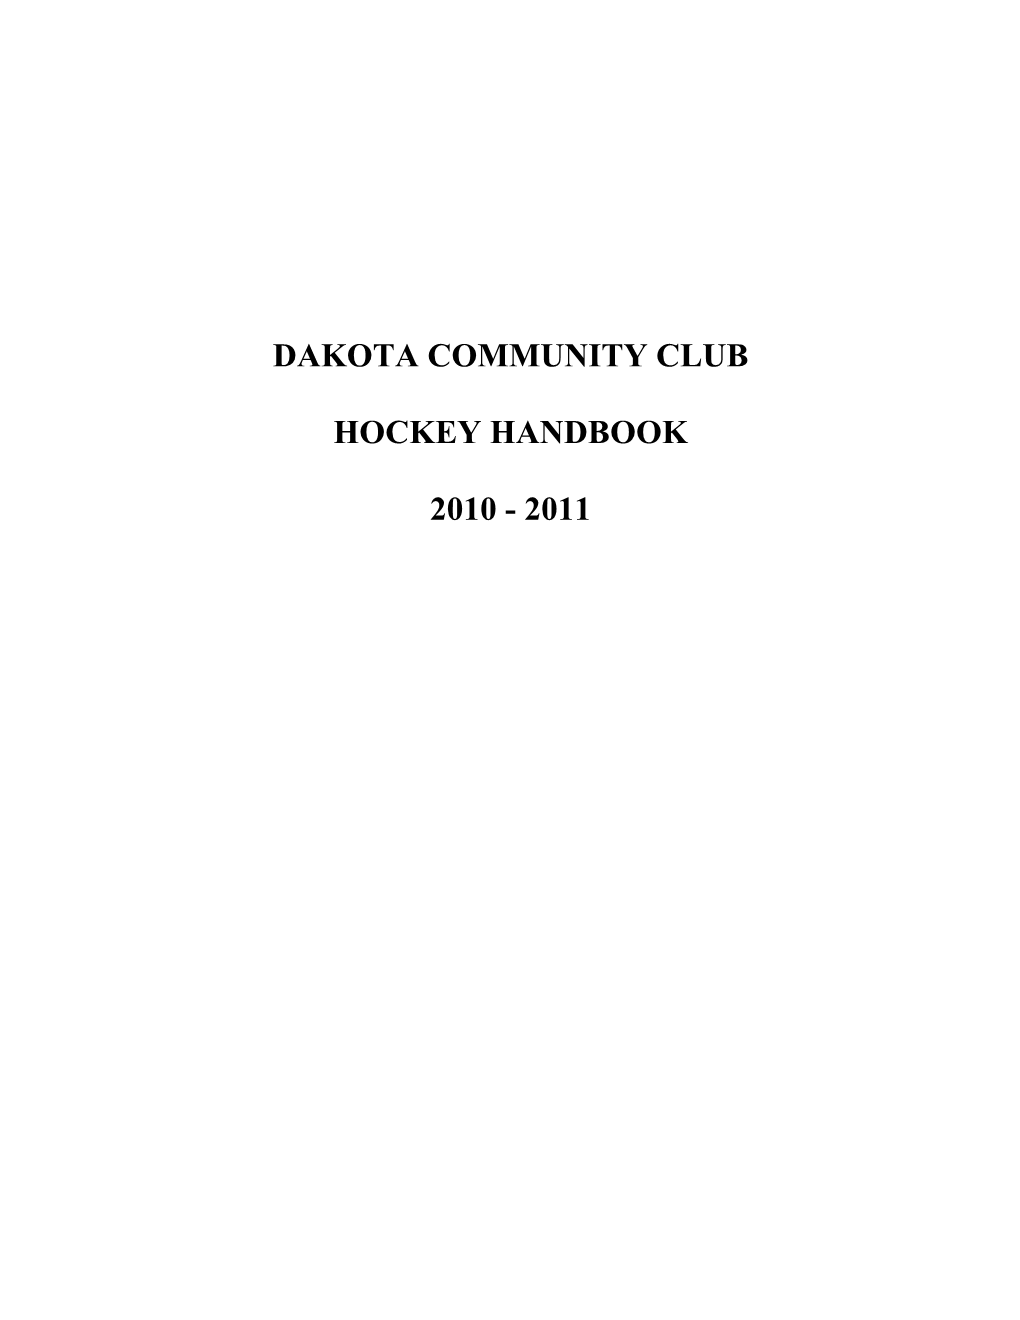 Dakota Community Club Hockey Handbook 2010